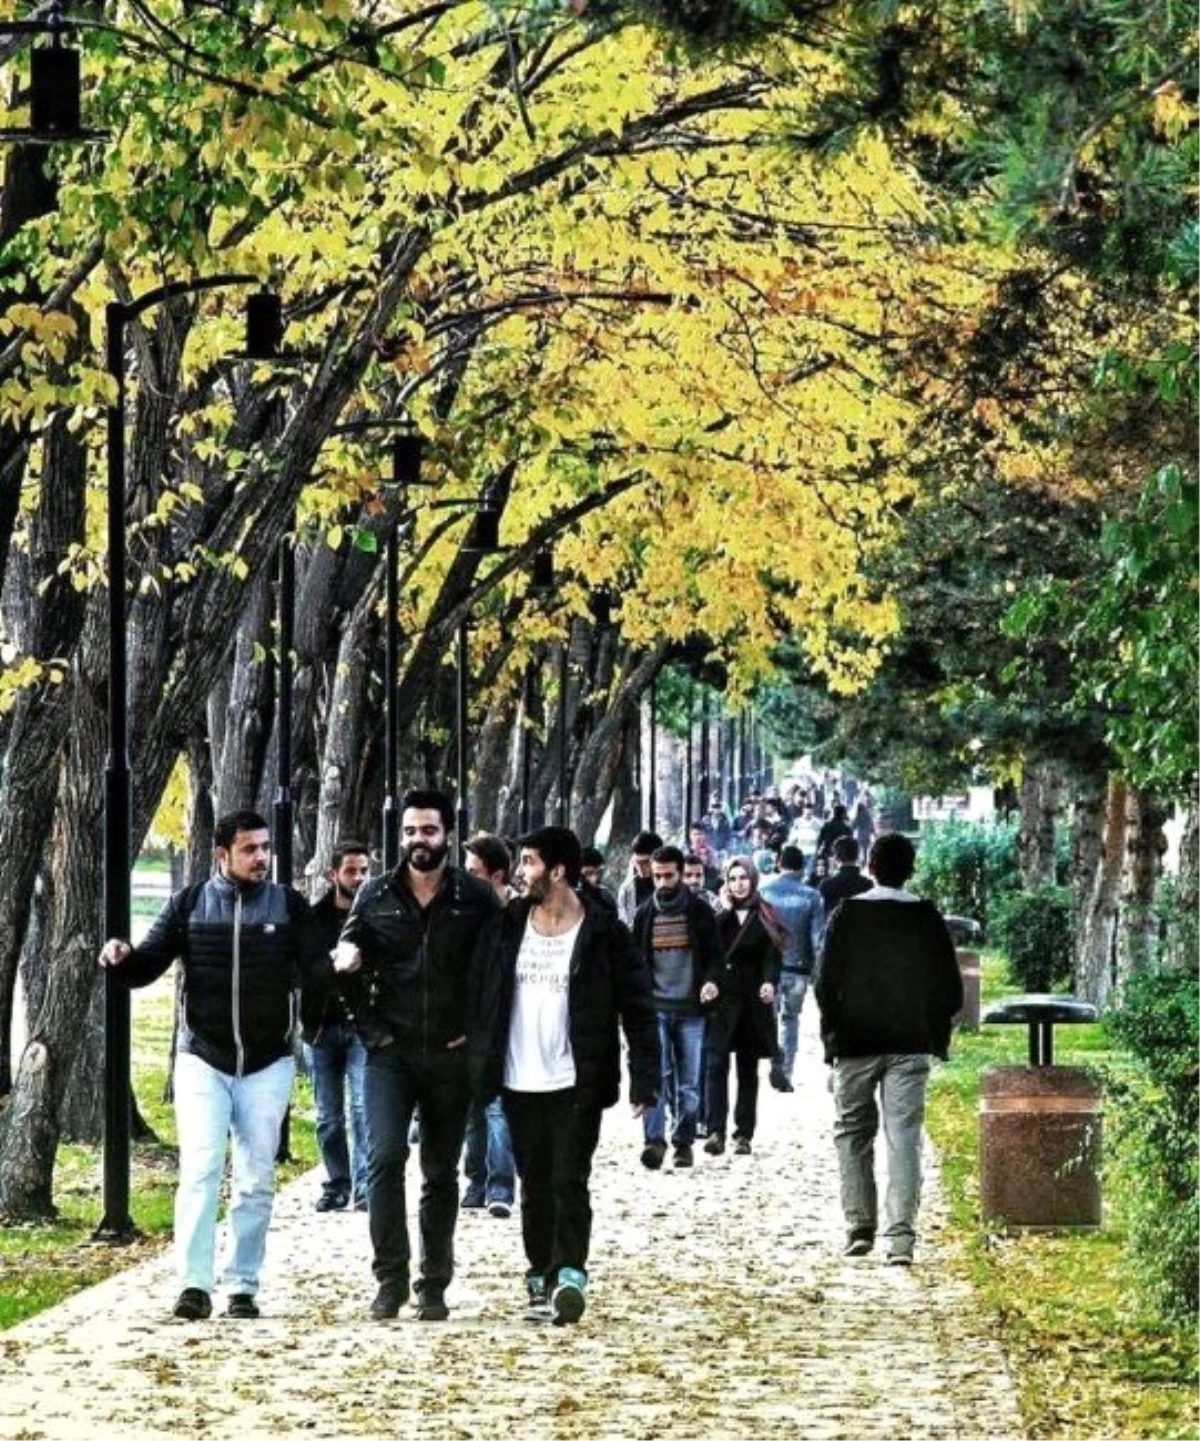 Sonbahar\' Fotoğrafı Mezun Öğrencilerin Erzurum Özlemine Tercüman Oldu